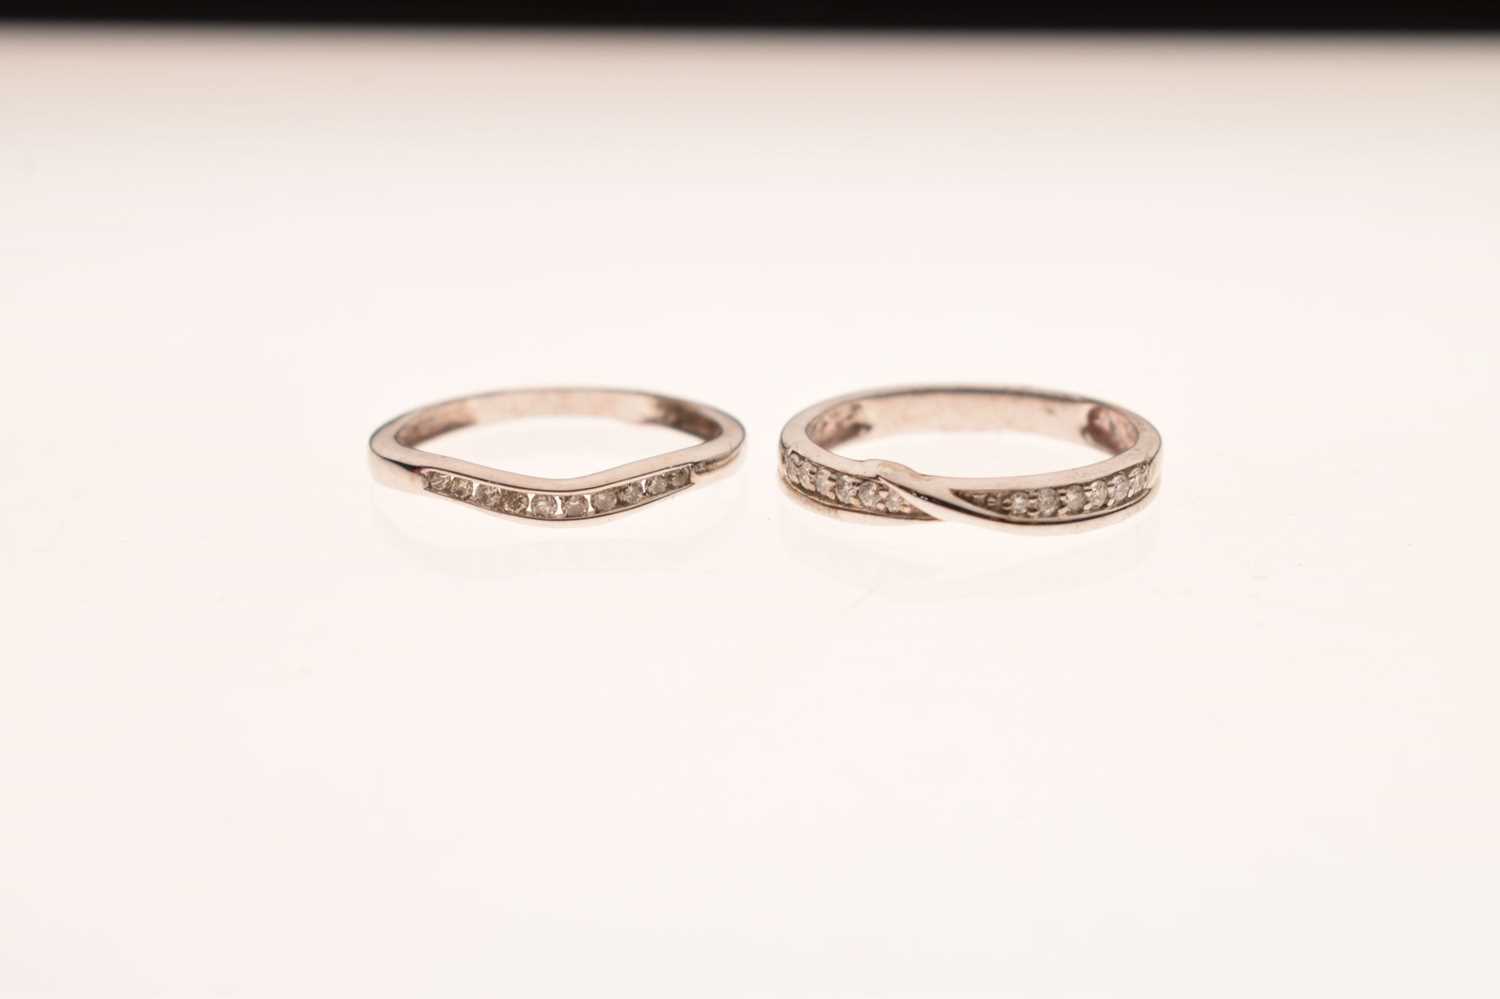 9ct white gold diamond set shaped wedding ring - Image 6 of 6